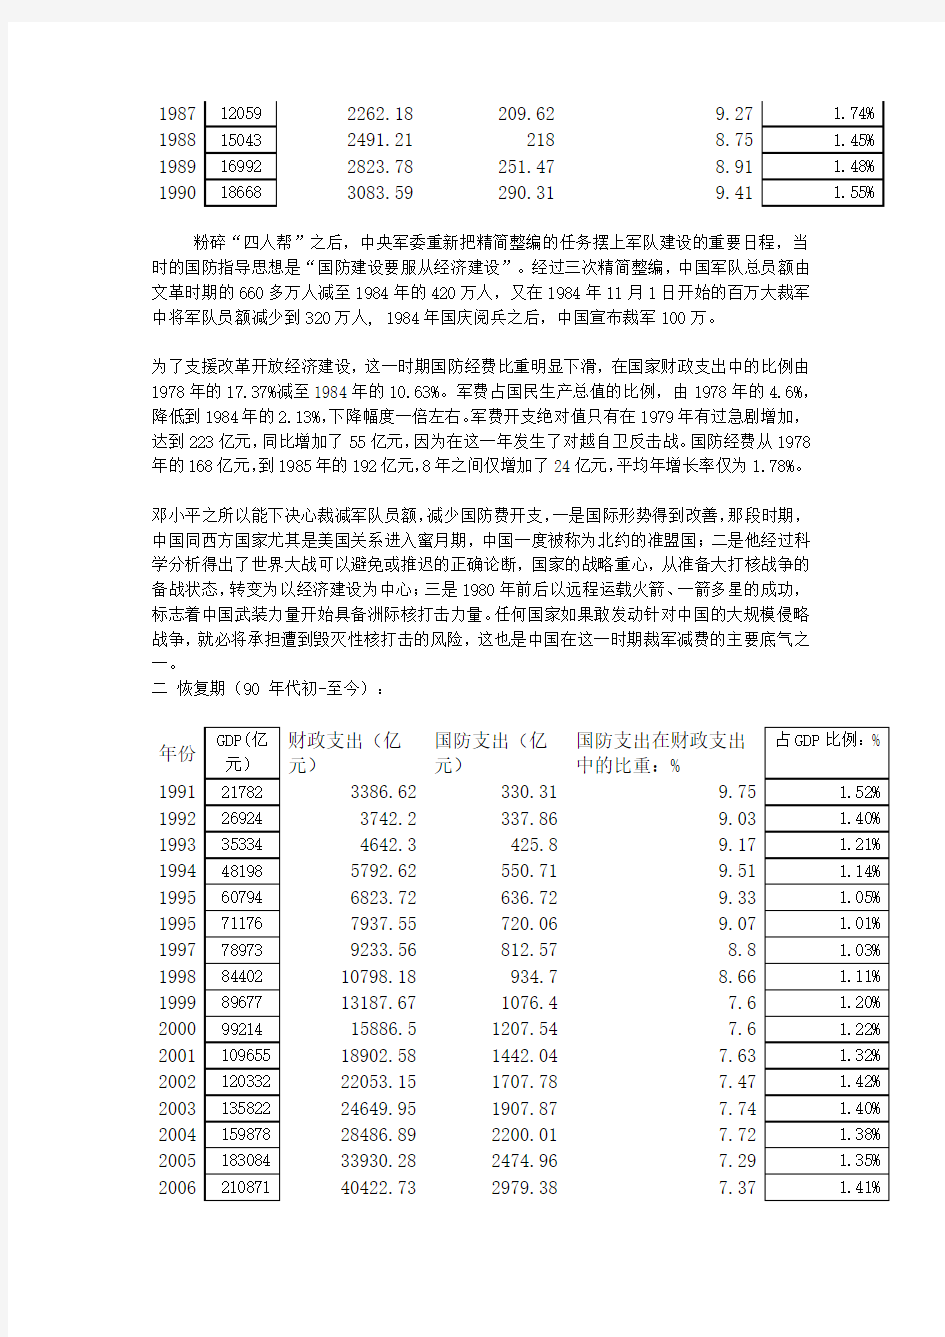 1978年以来中国国防支出变化趋势分析